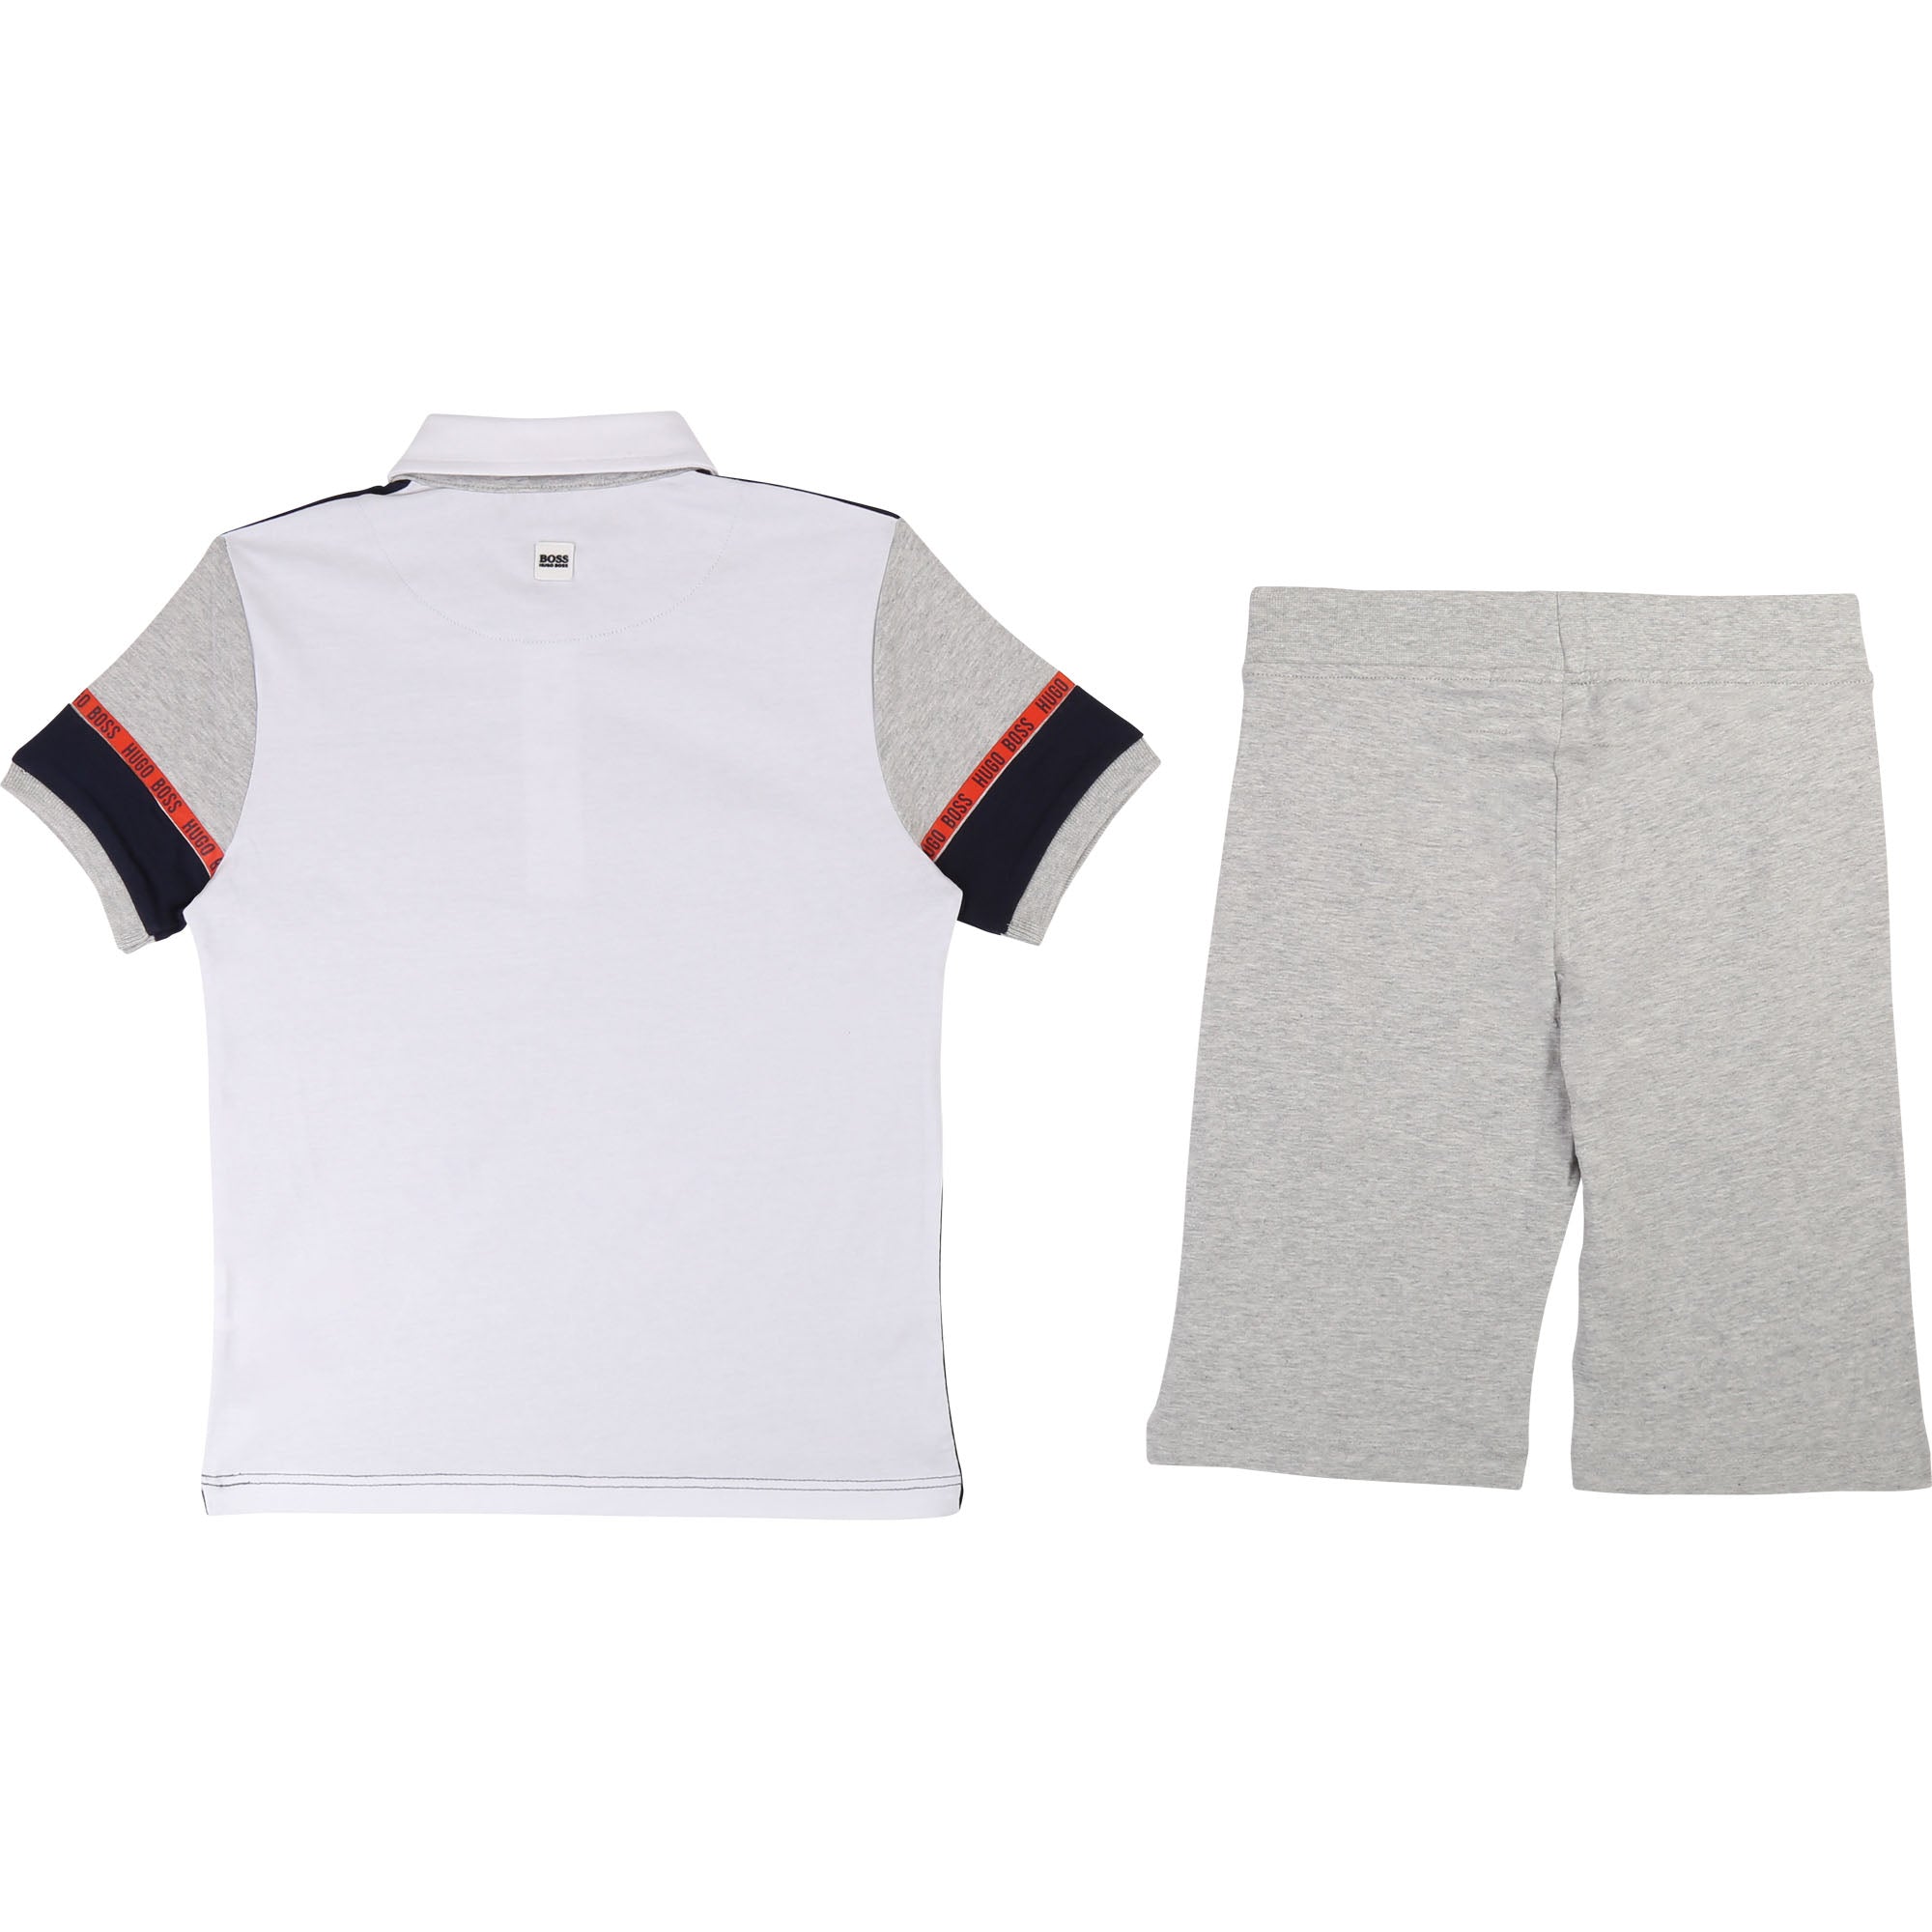 Boys Blue & Grey Polo Cotton Sets